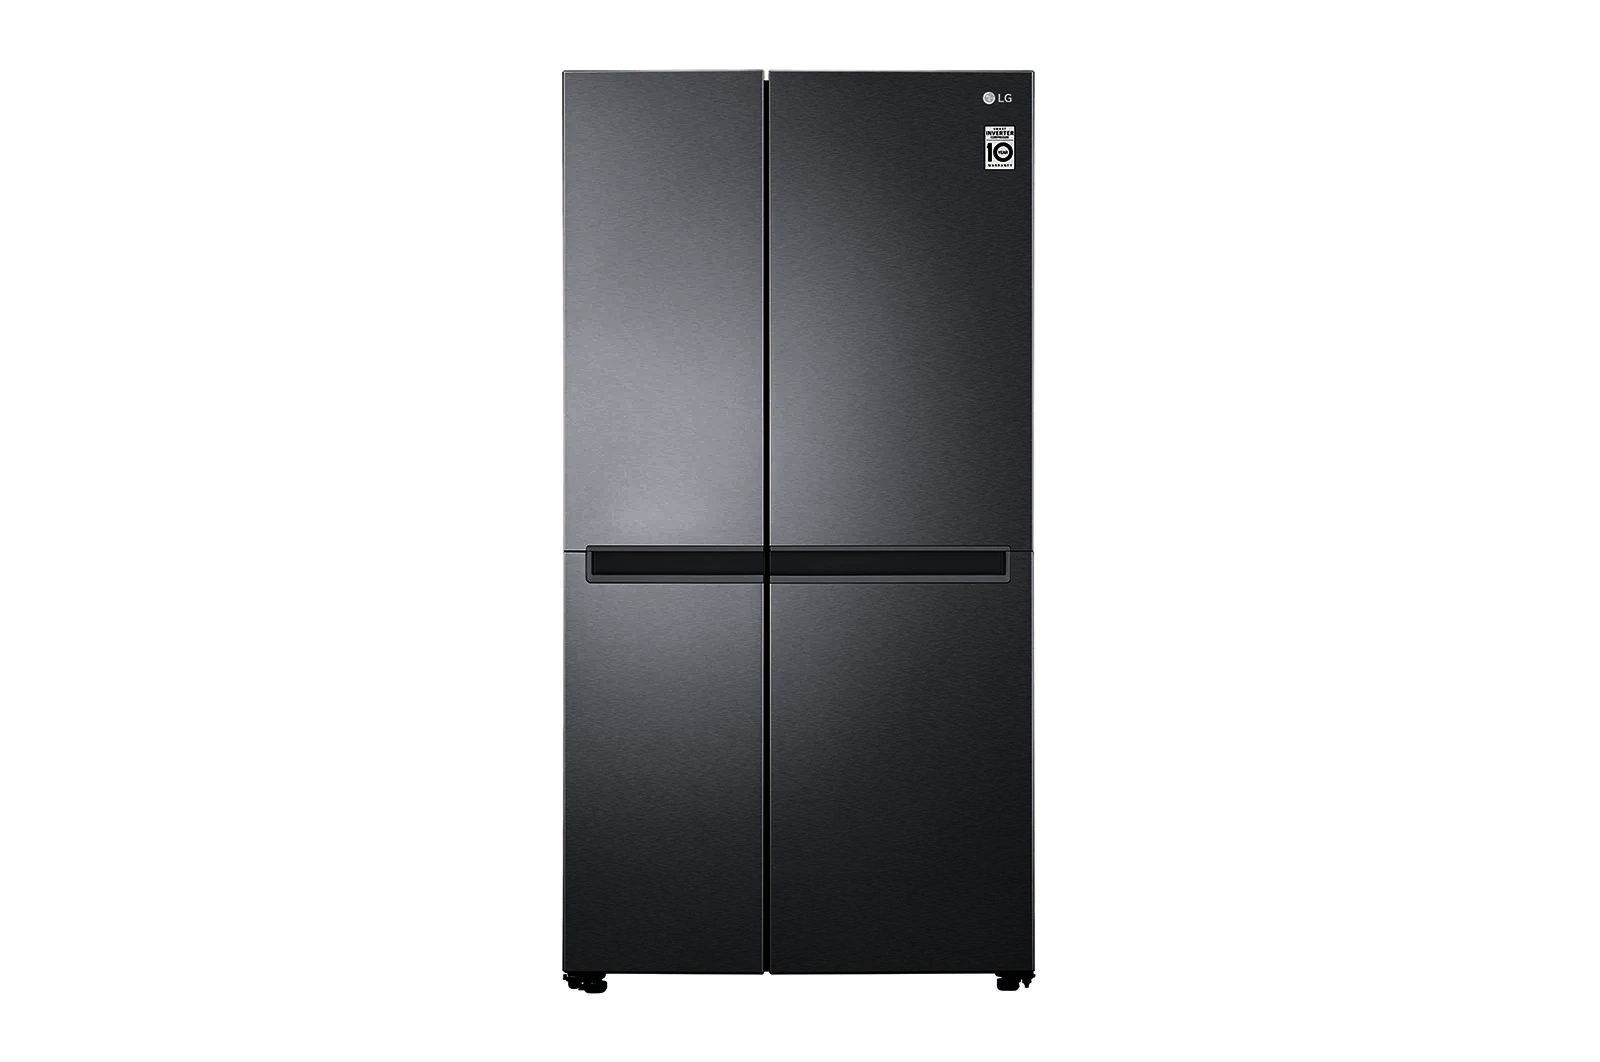 réfrigérateur-lg-gc-b257jlyl---625l---6-mois-side-by-side-|compresseur-smart-inverter-|flux-d’air-multiple-|smart-diagnosis™